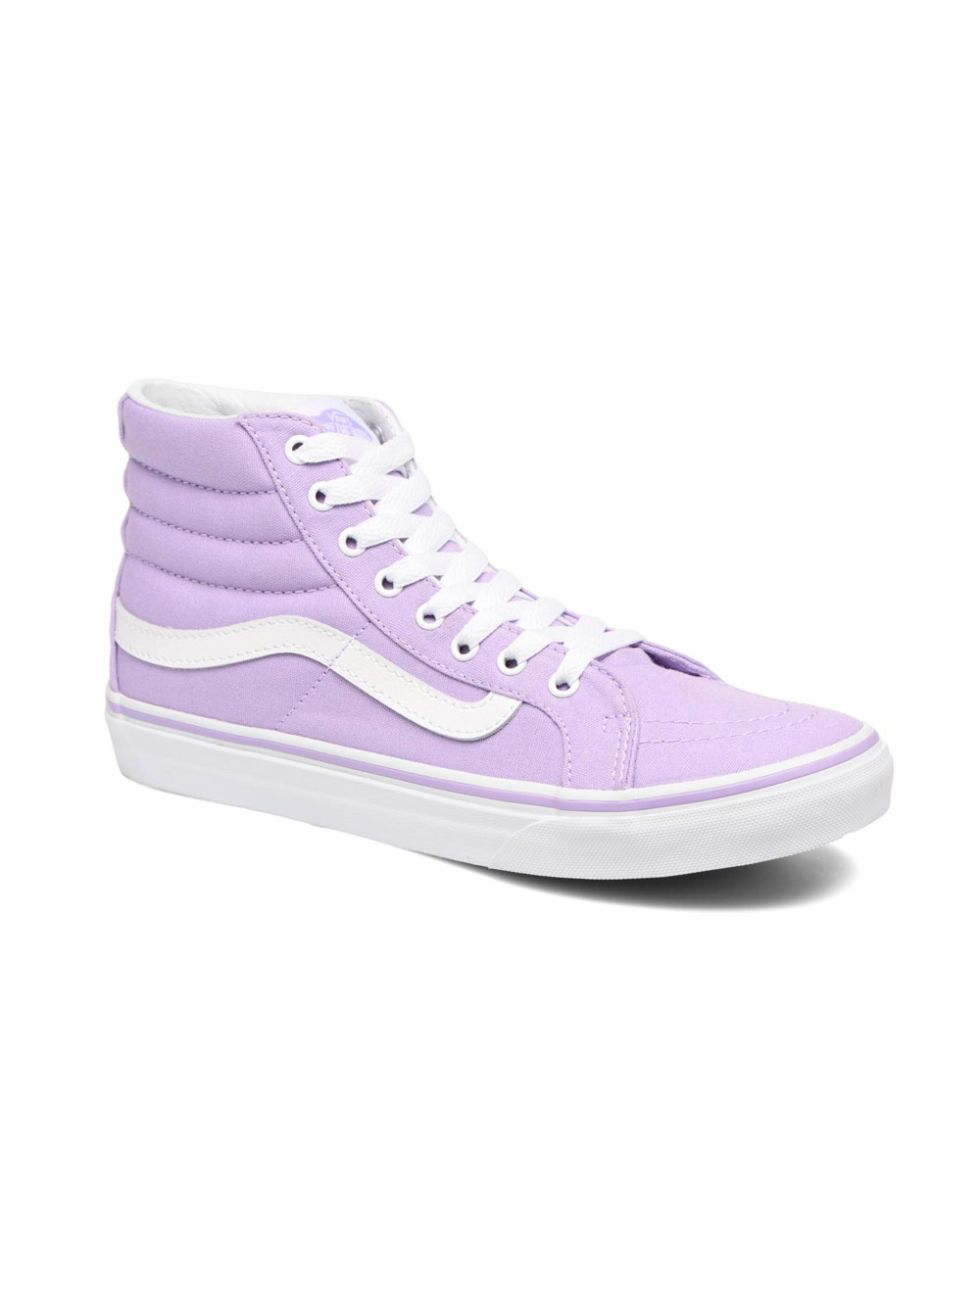 Footwear, Shoe, Product, Purple, White, Magenta, Violet, Pink, Lavender, Sneakers, 